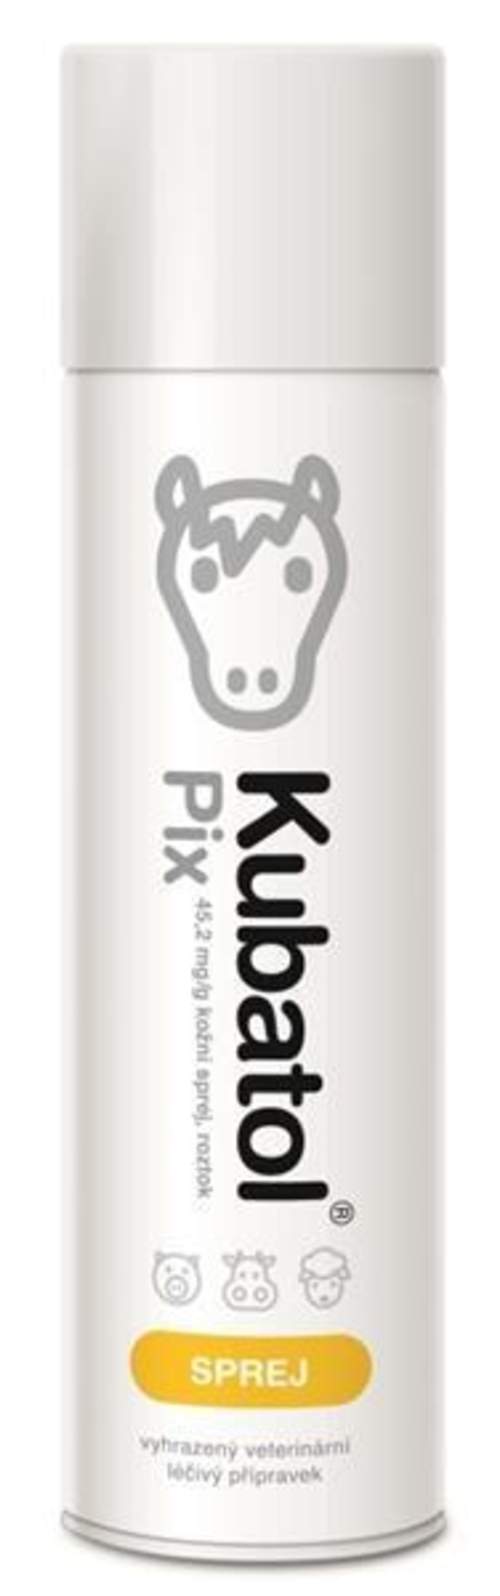 Kubatol PIX 45,2 mg/g kožní sprej spr 500 ml